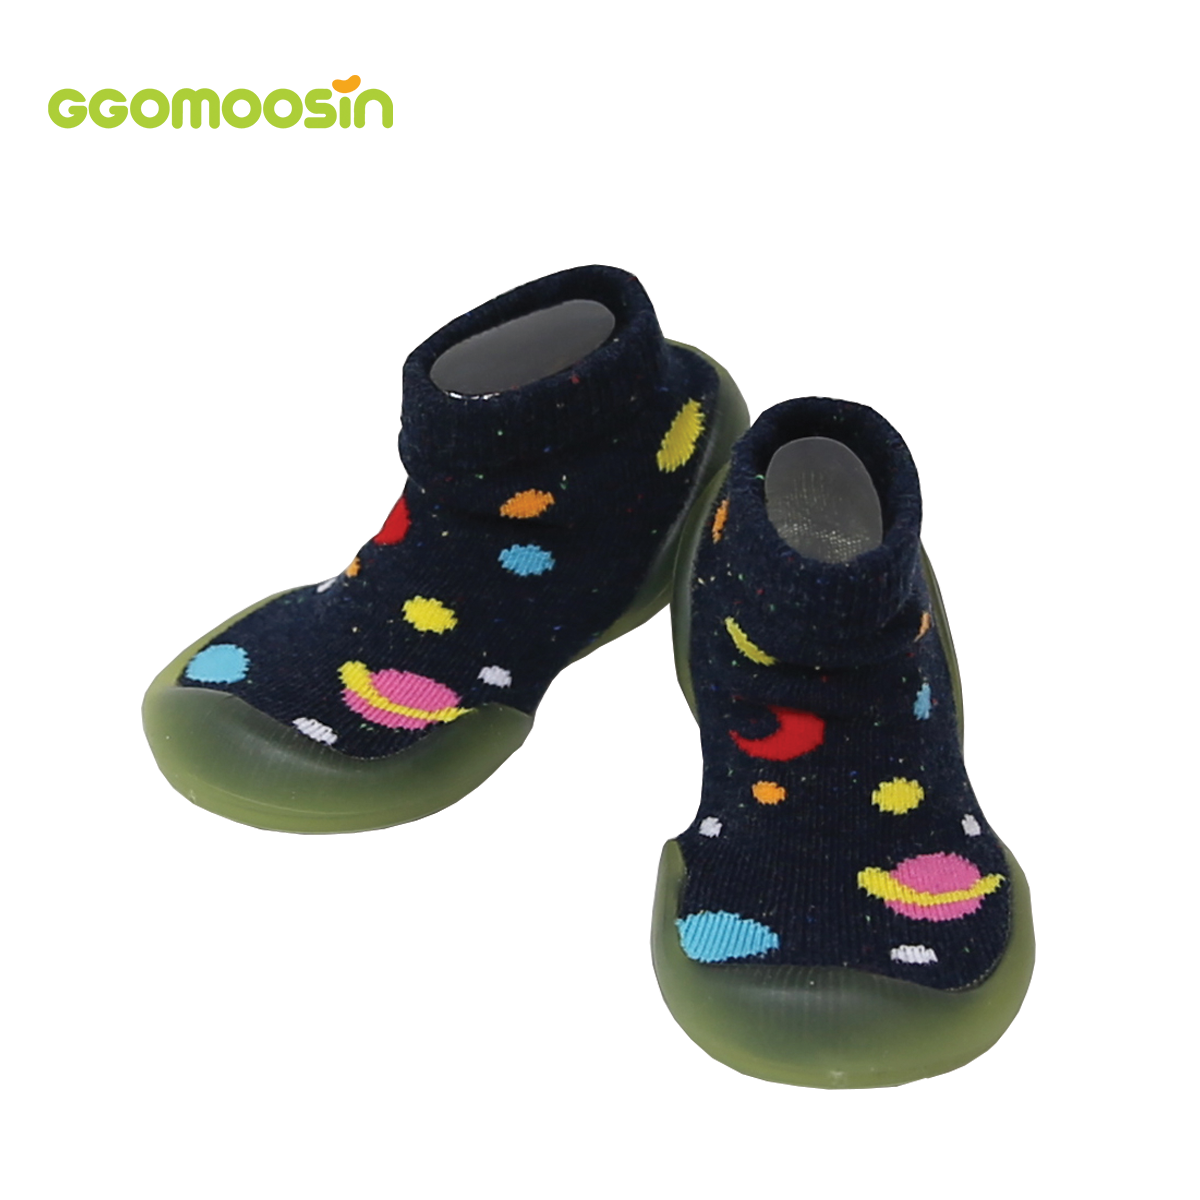 รองเท้าหัดเดิน GGOMOOSIN ลาย Mars (อวกาศ) Baby Shoes รองเท้าเด็กอ่อน รองเท้าเด็กหัดเดิน รองเท้าถุงเท้า รองเท้าเด็กผู้ชาย รองเท้าเด็กผู้หญิง